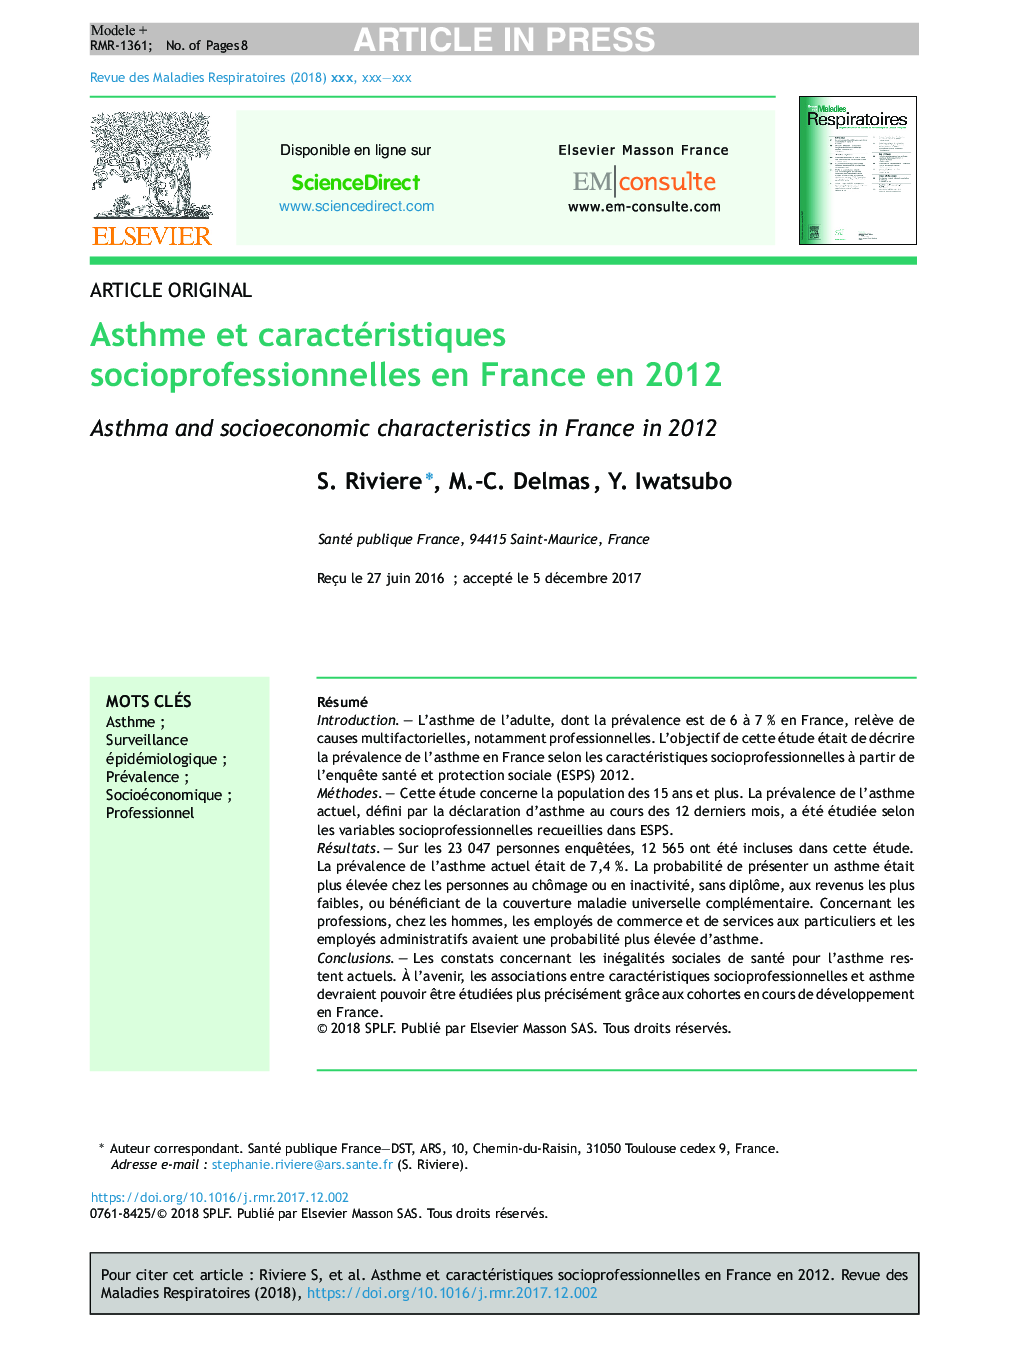 آسم و ویژگی های اجتماعی-حرفه ای در فرانسه در سال 2012 